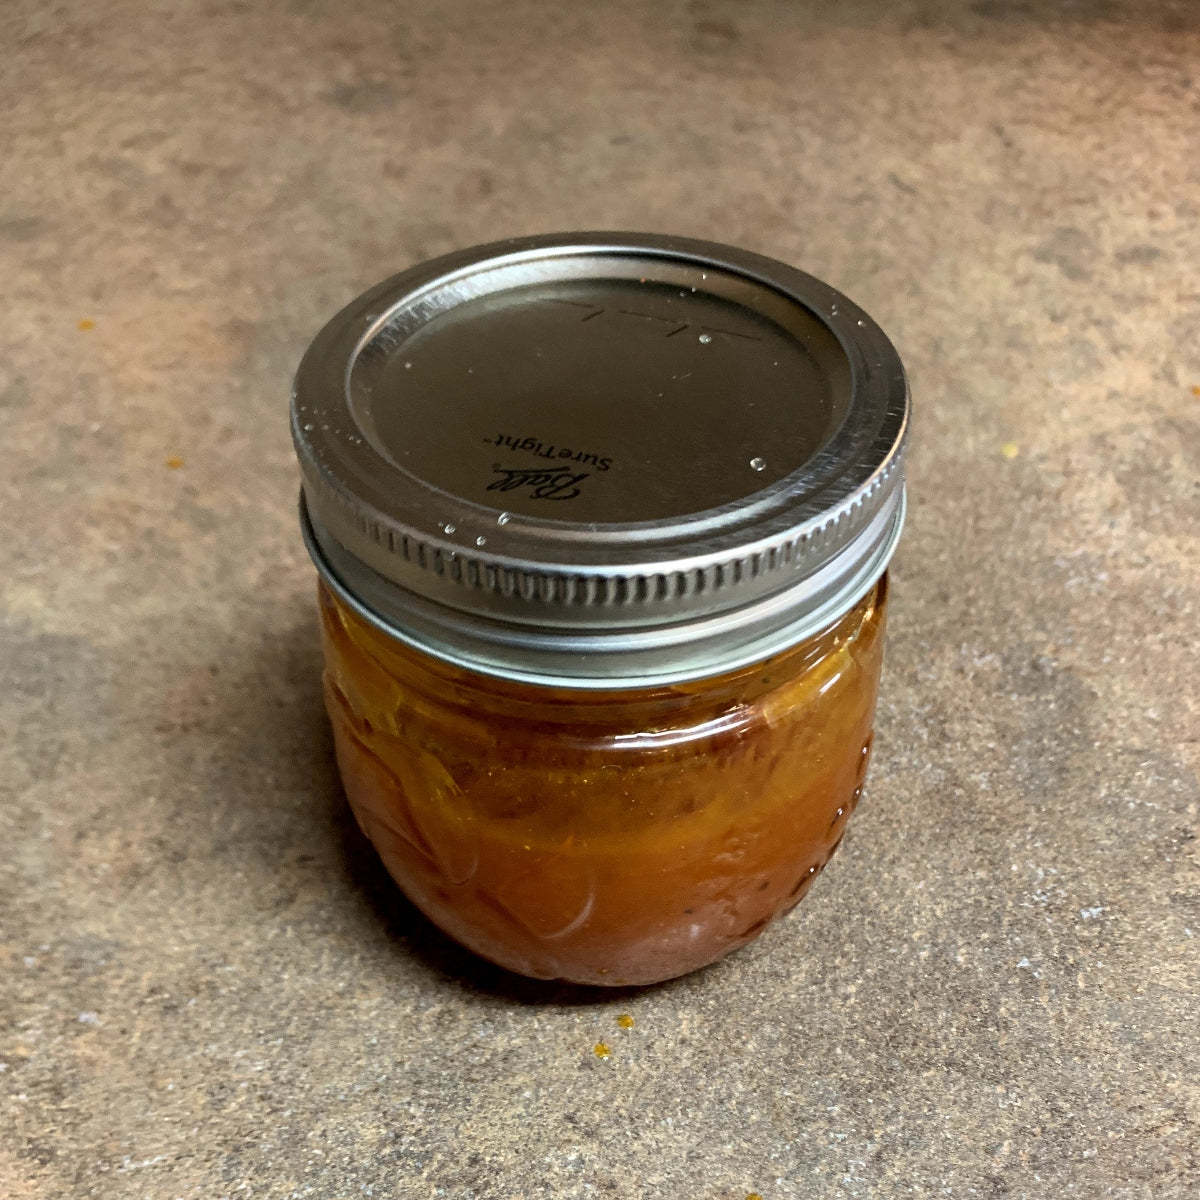 Honey Buffalo Sauce in a Jar.